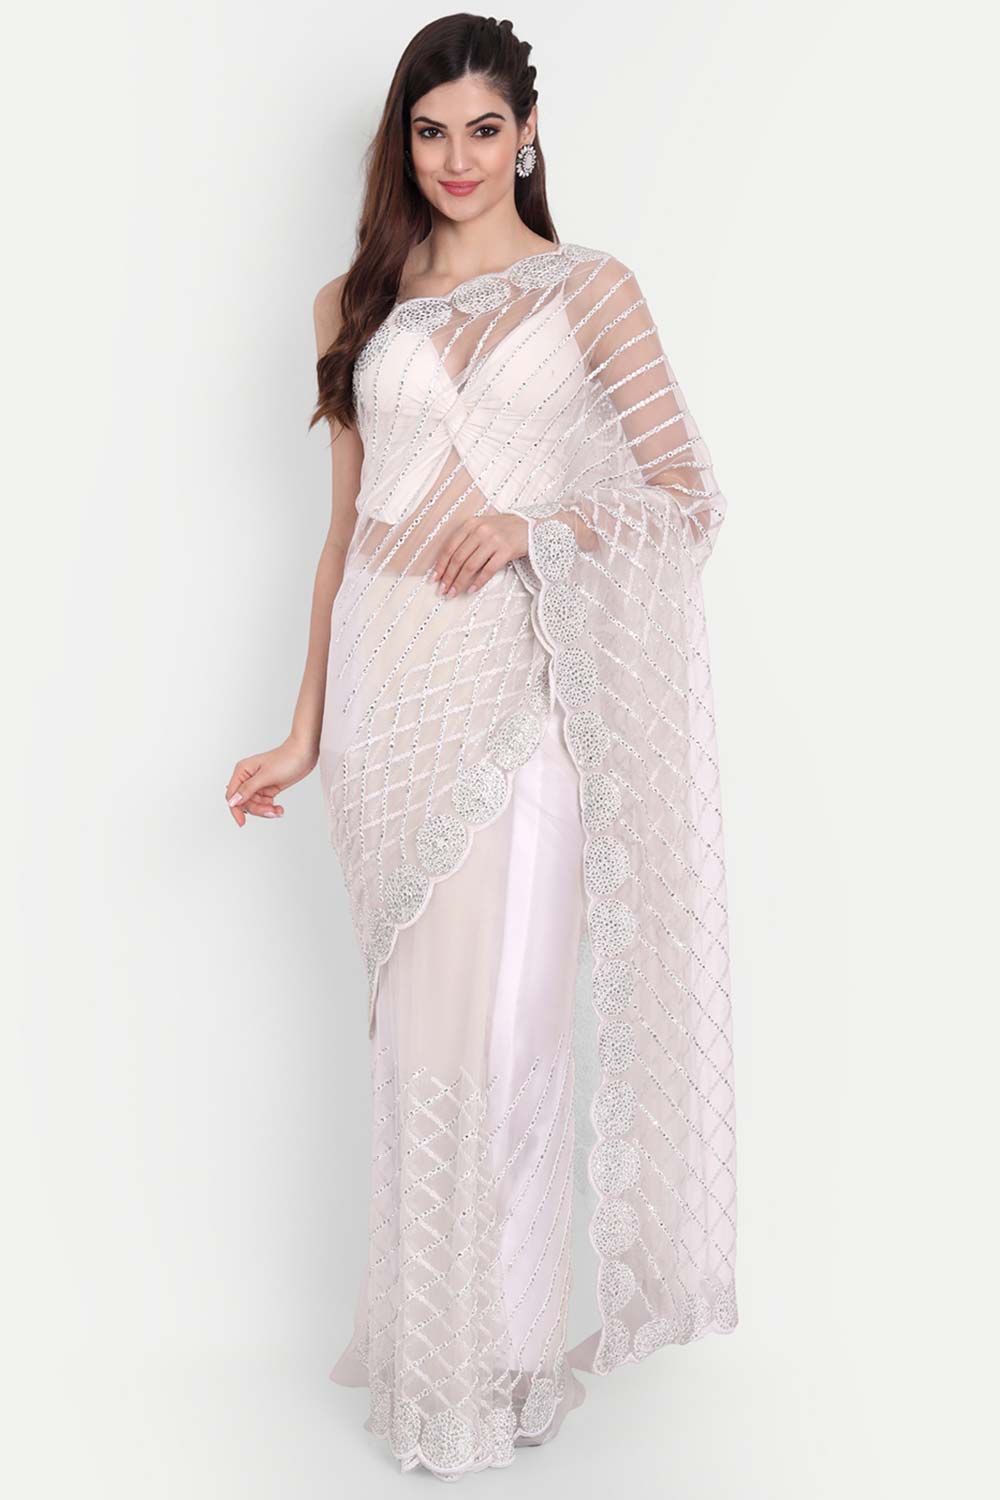 White Net White Thread Embroidered Saree